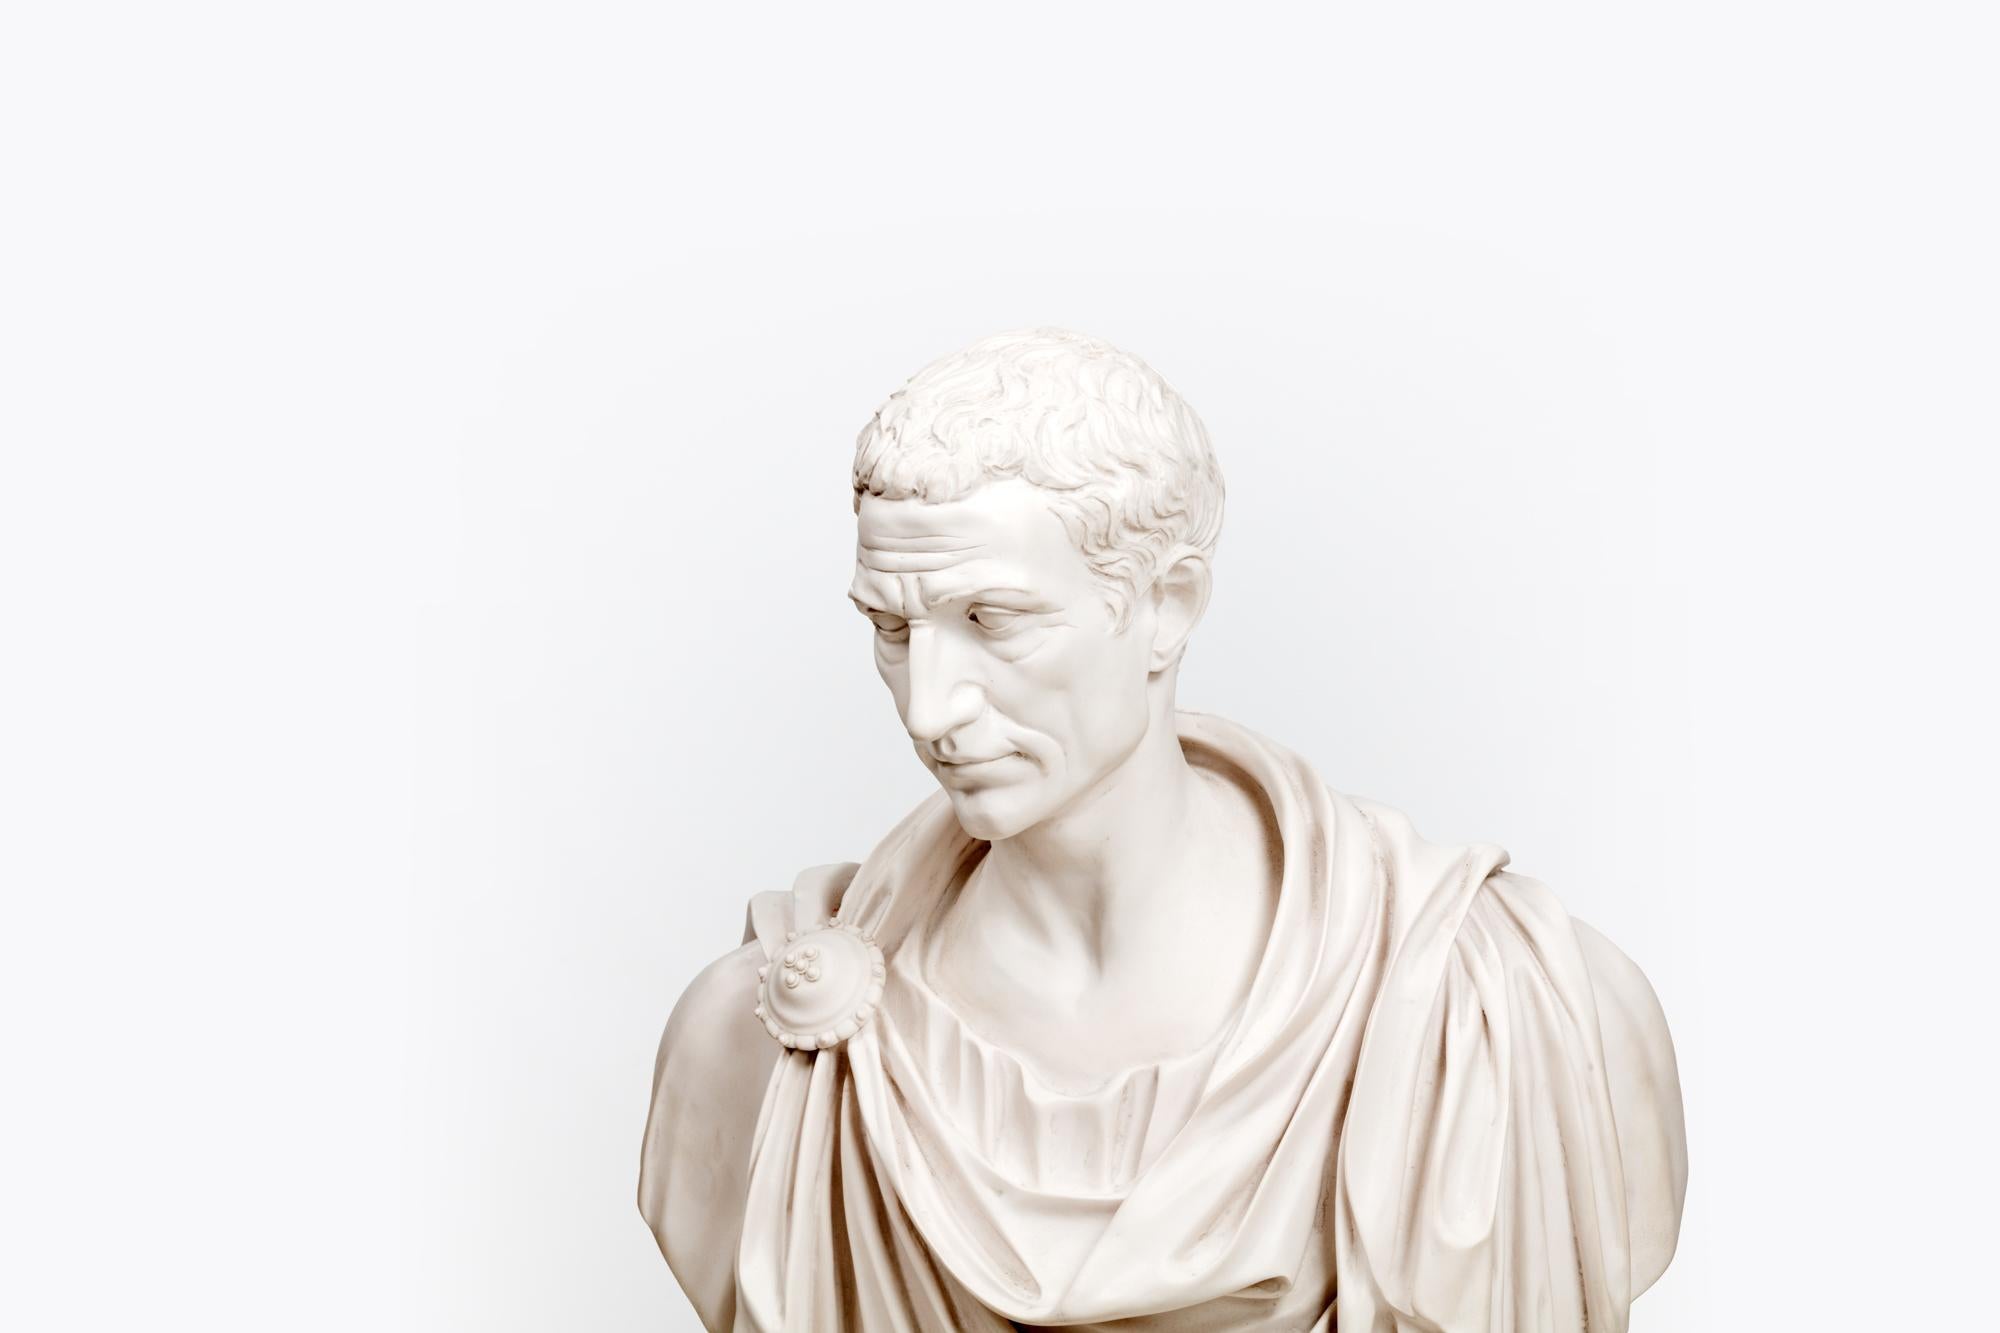 Porträtbüste des römischen Kaisers Julius Caesar in Toga, 19. Jahrhundert, Parianware.

Parian ist eine Art von Biskuitporzellan, das den Stil von geschnitztem Marmor nachahmt.

Gaius Julius Caesar war ein römischer Feldherr und Staatsmann sowie ein